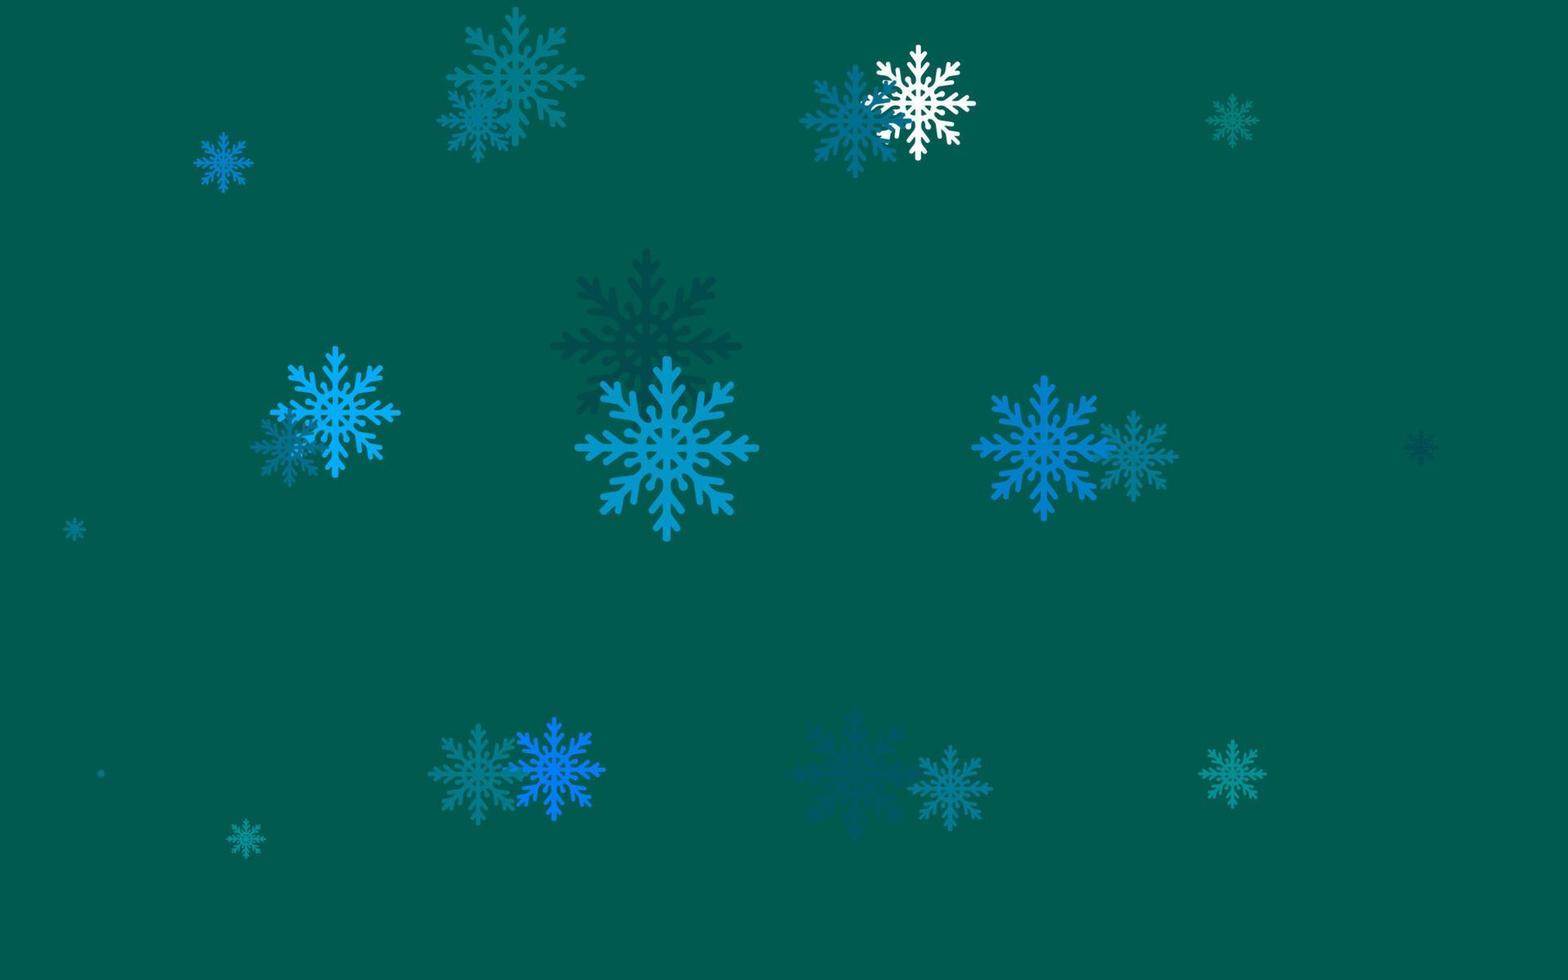 couverture vectorielle bleu clair et vert avec de beaux flocons de neige. vecteur